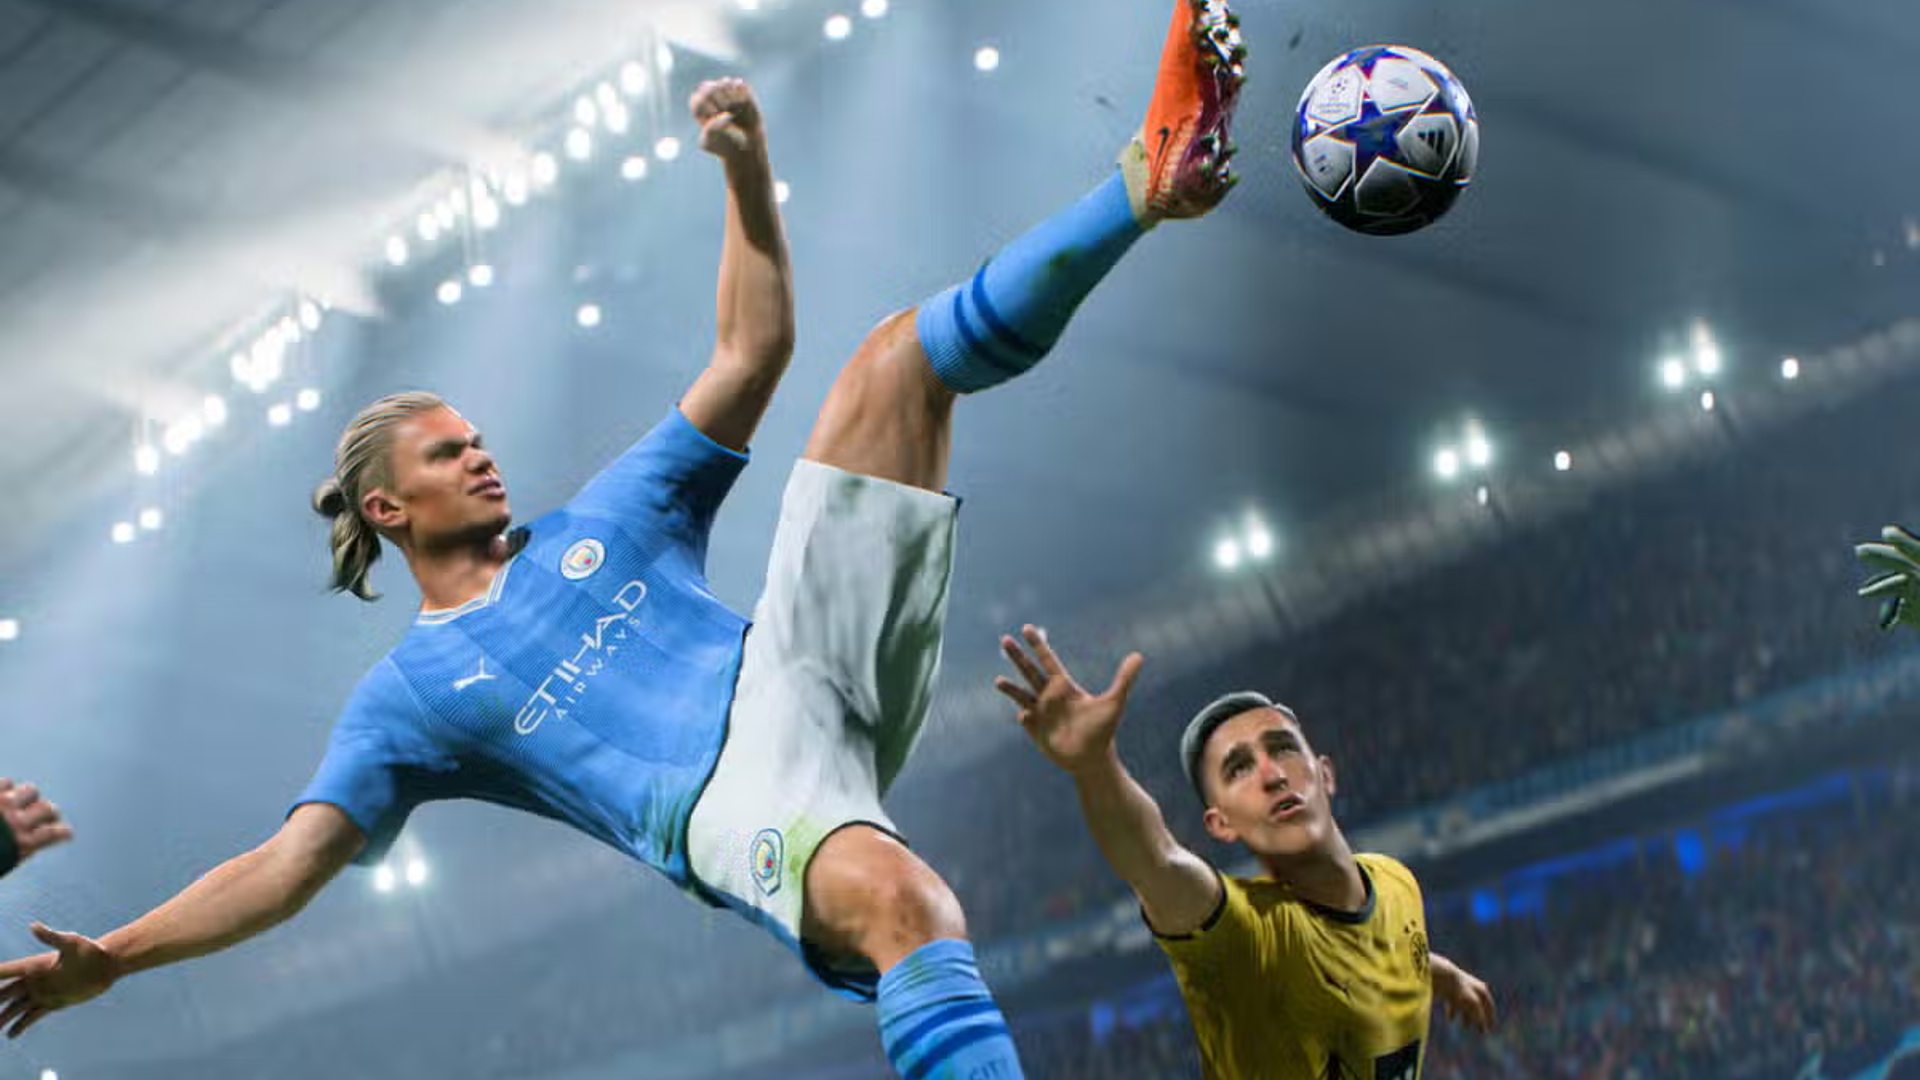 ベスト Xbox スポーツ ゲーム: ボールを蹴るハーランドの姿が見られる